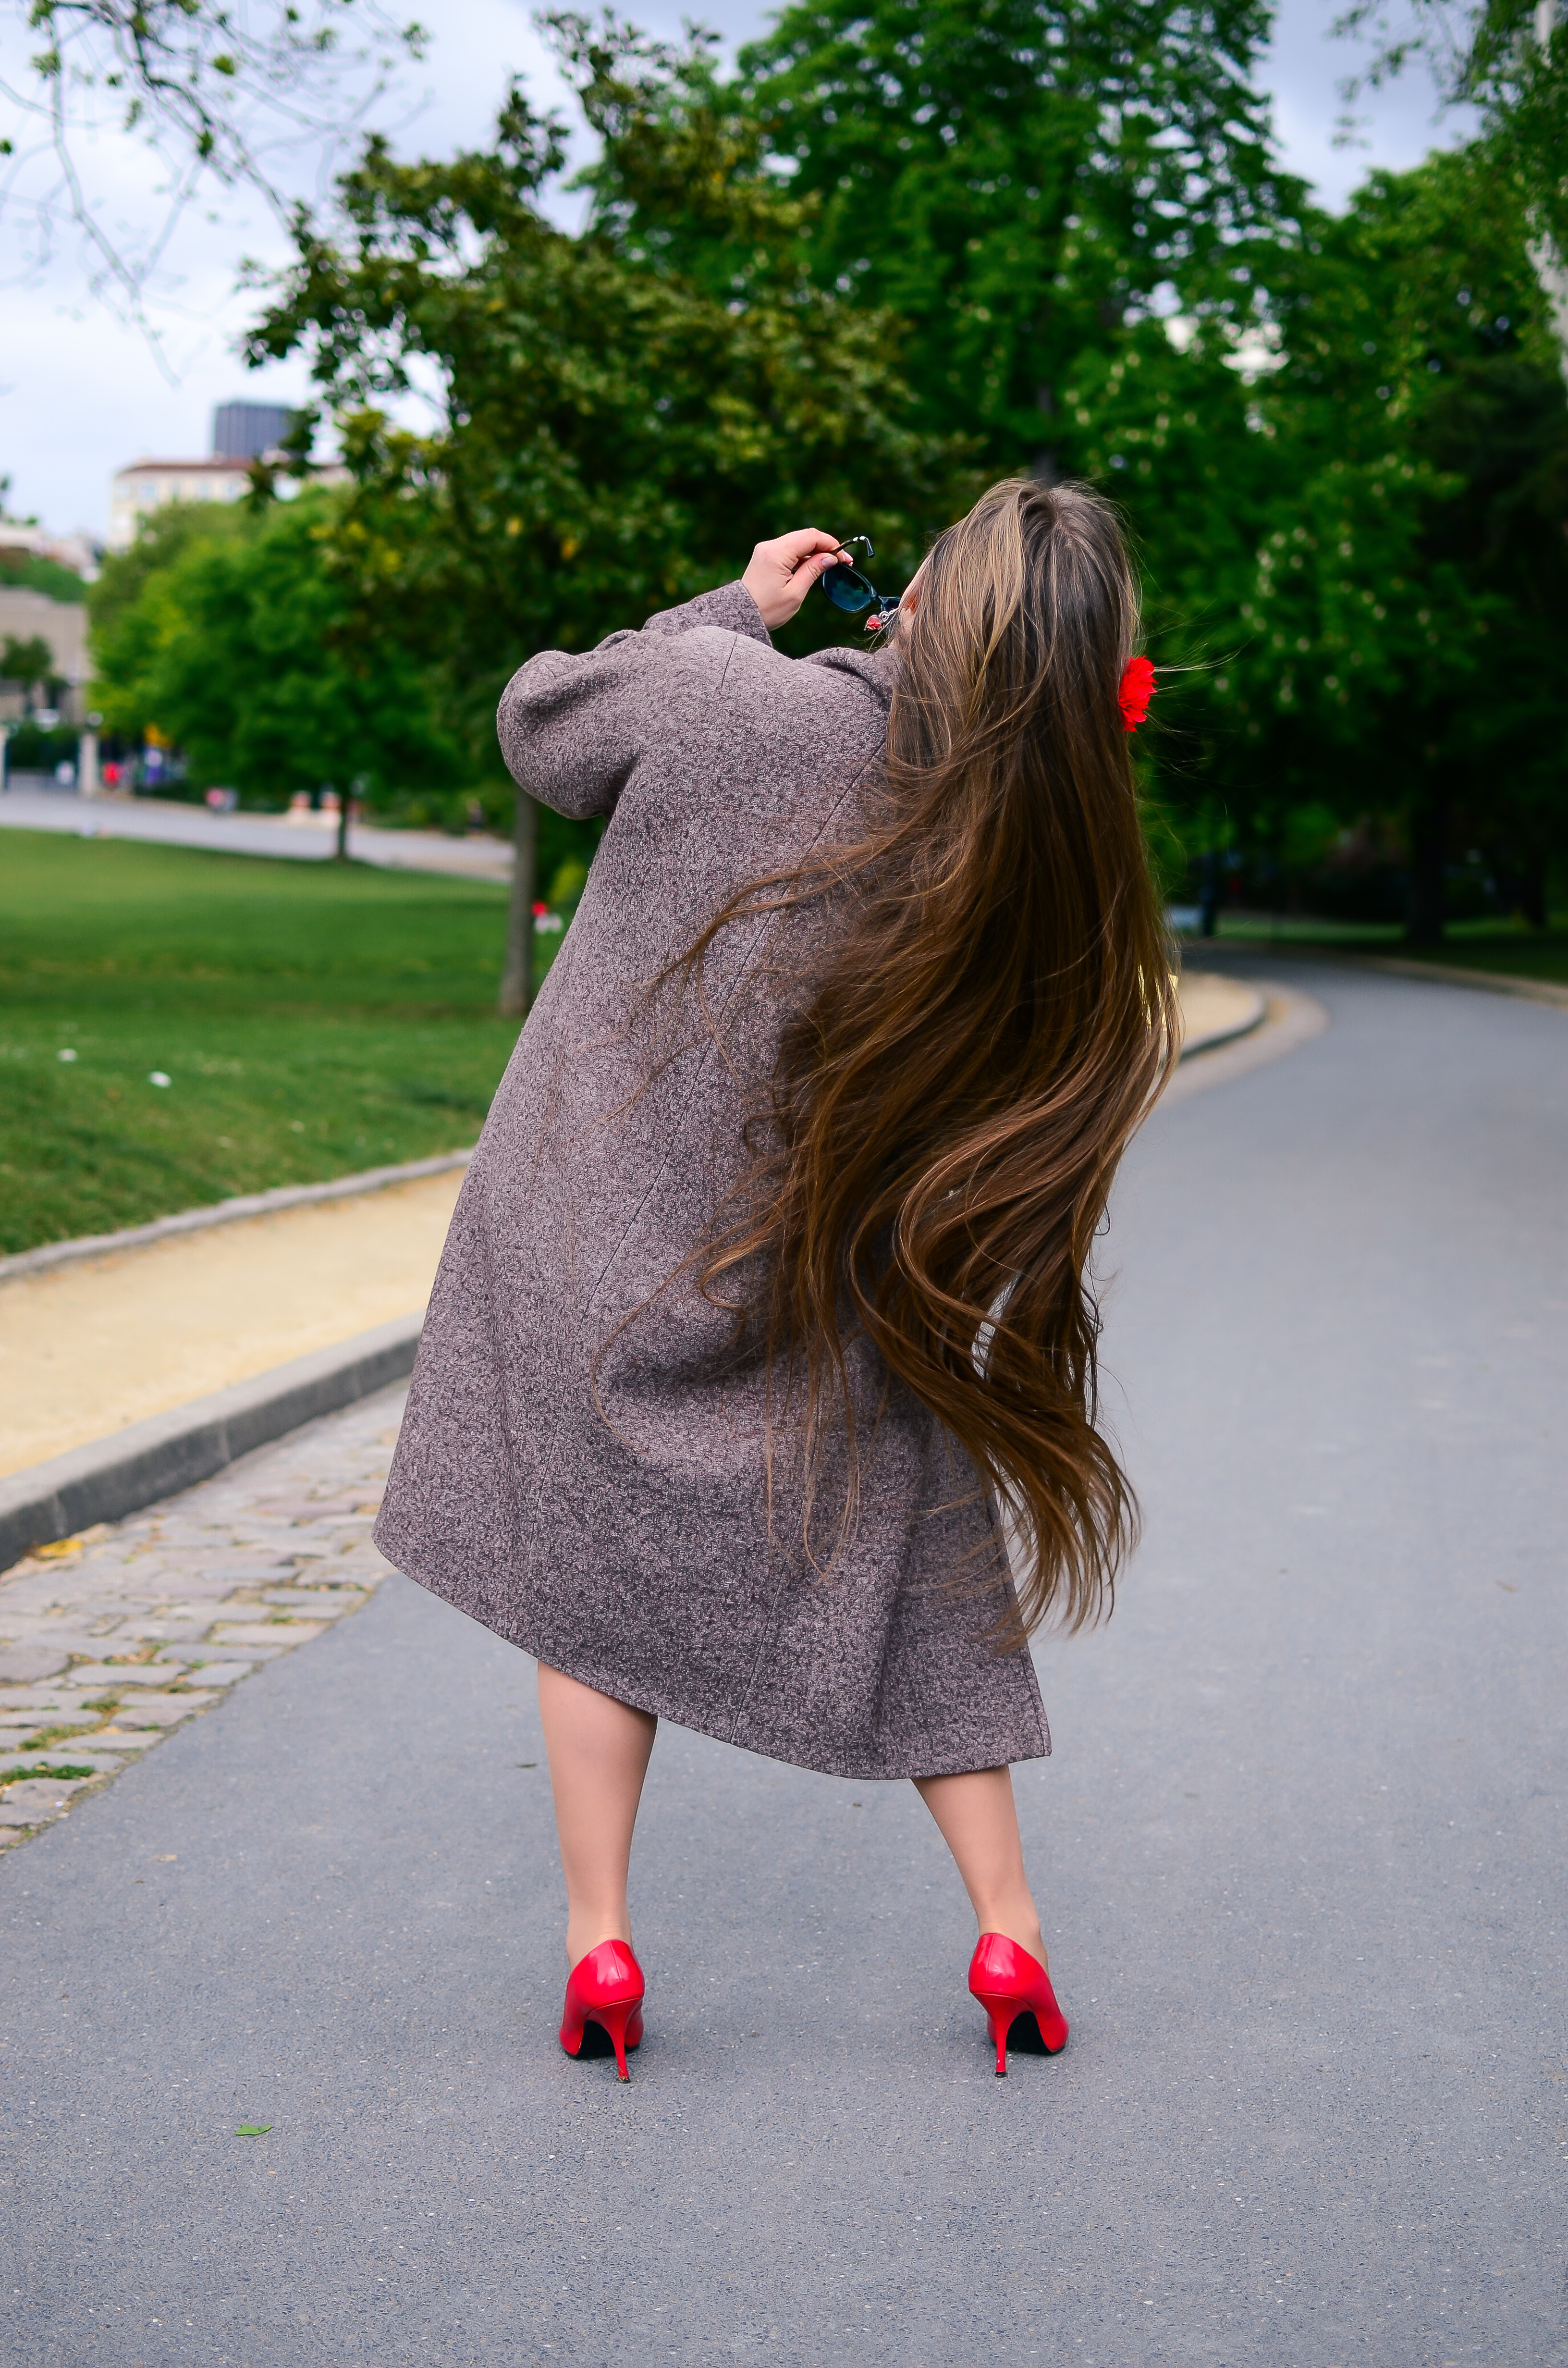 Vista trasera de una mujer con el pelo moreno extremadamente largo | Foto: Shutterstock